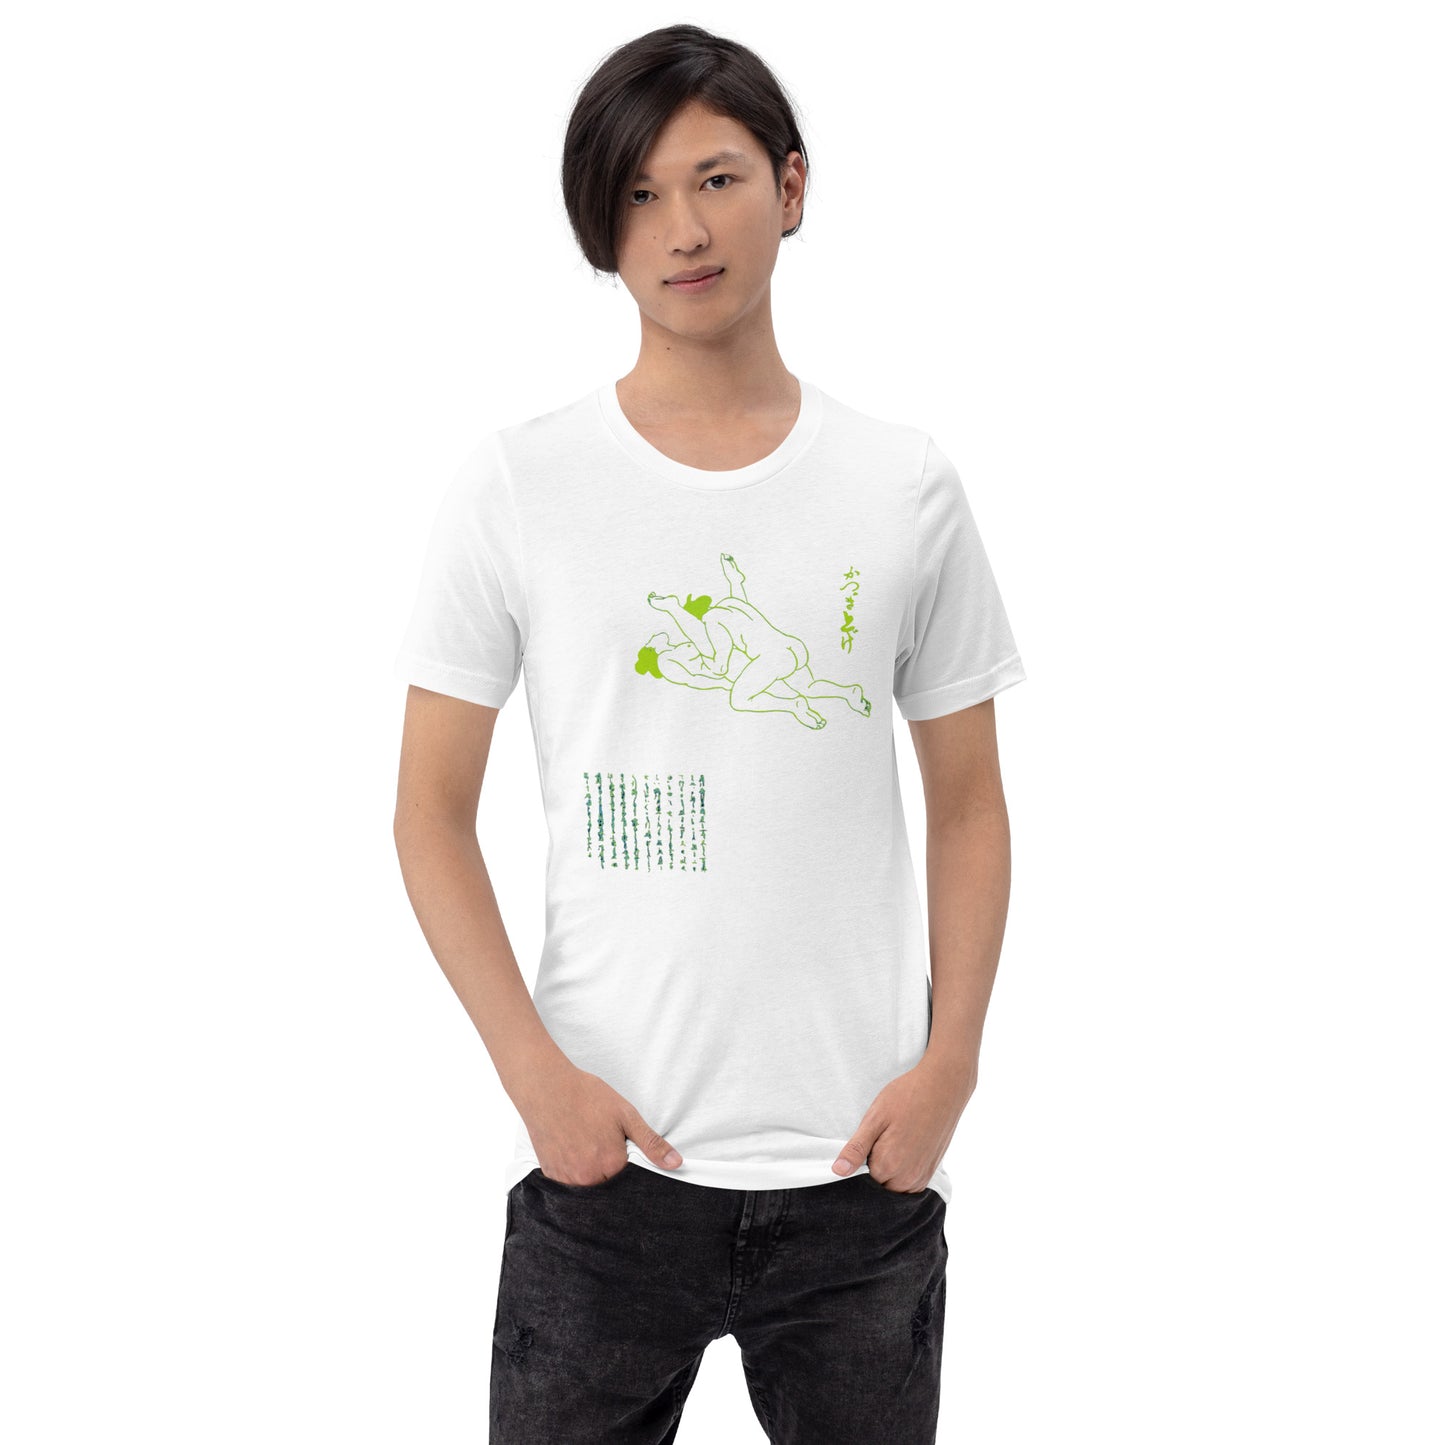 Unisex t-shirt "19 KATSUGI AGE" White